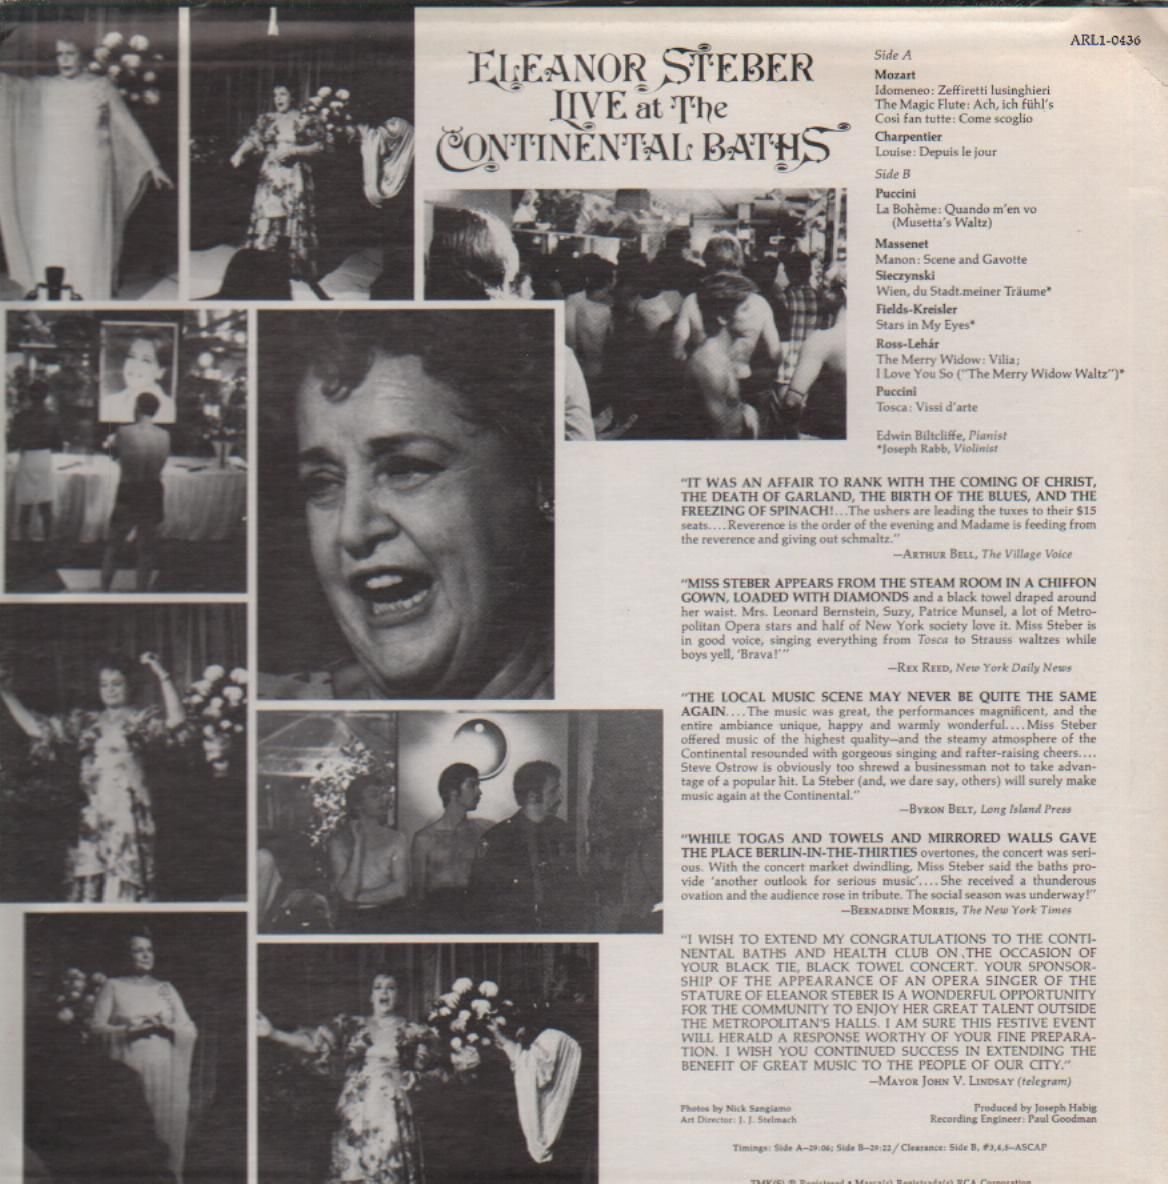 La diva de los baños continentales, la diva Eleanor Steber, quien grabó un álbum en vivo allí.